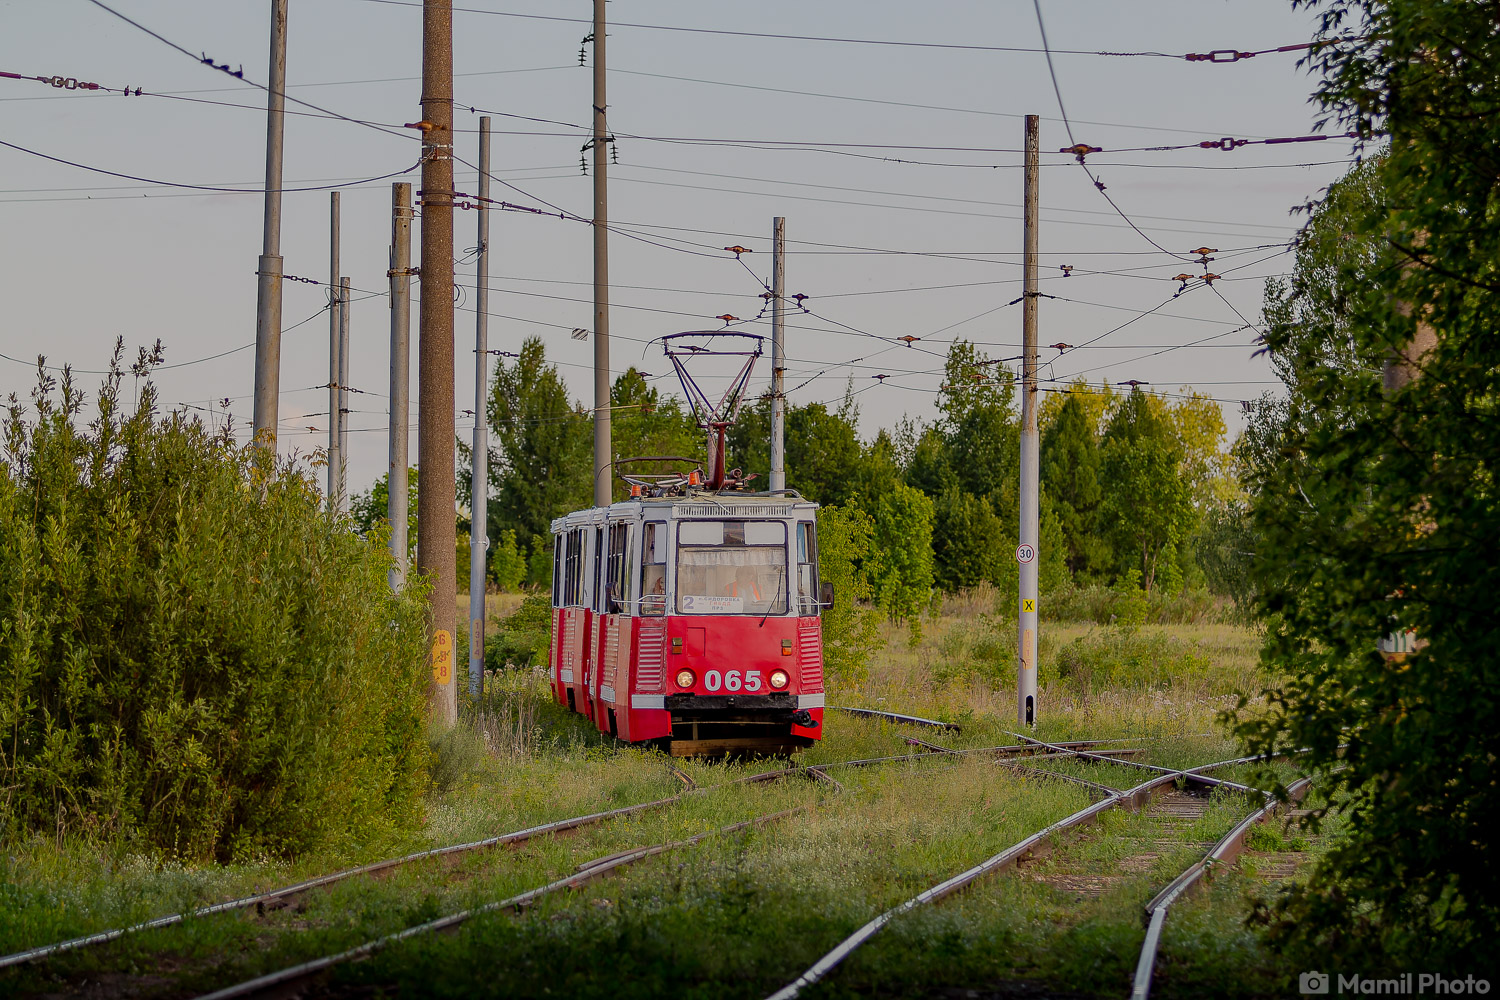 Naberežnyje Čelny, 71-605 (KTM-5M3) č. 065; Naberežnyje Čelny — Factory line